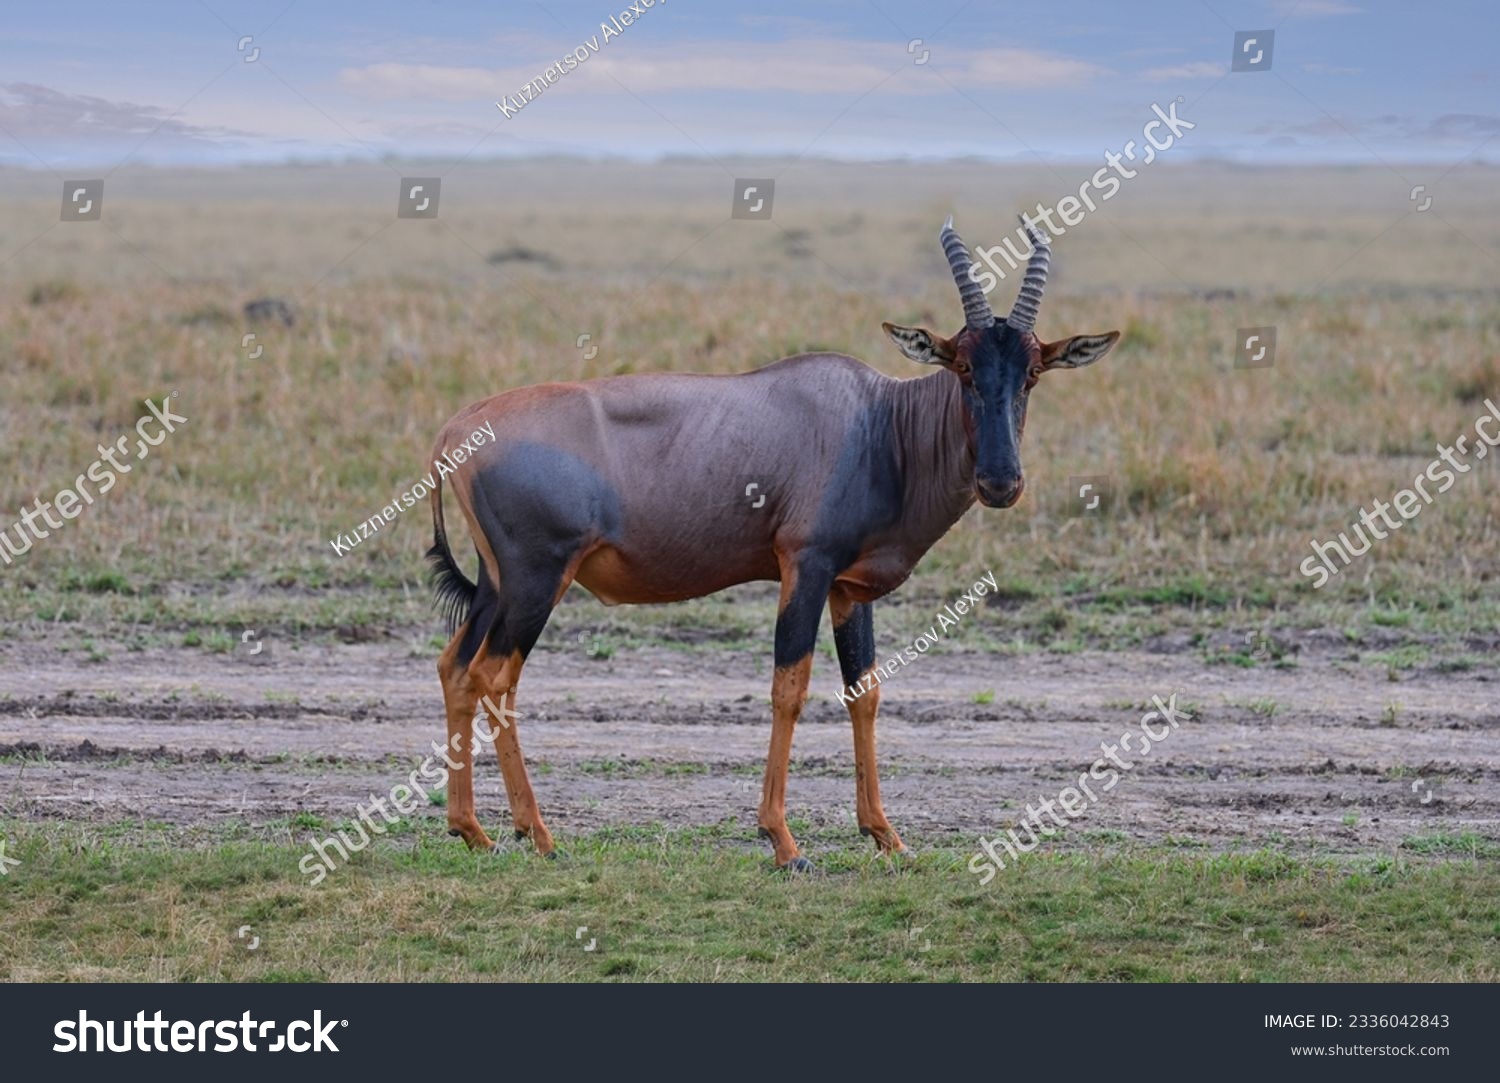 Bubal antelope graze in the savannah in its natural environment in Kenya, Africa
 #2336042843